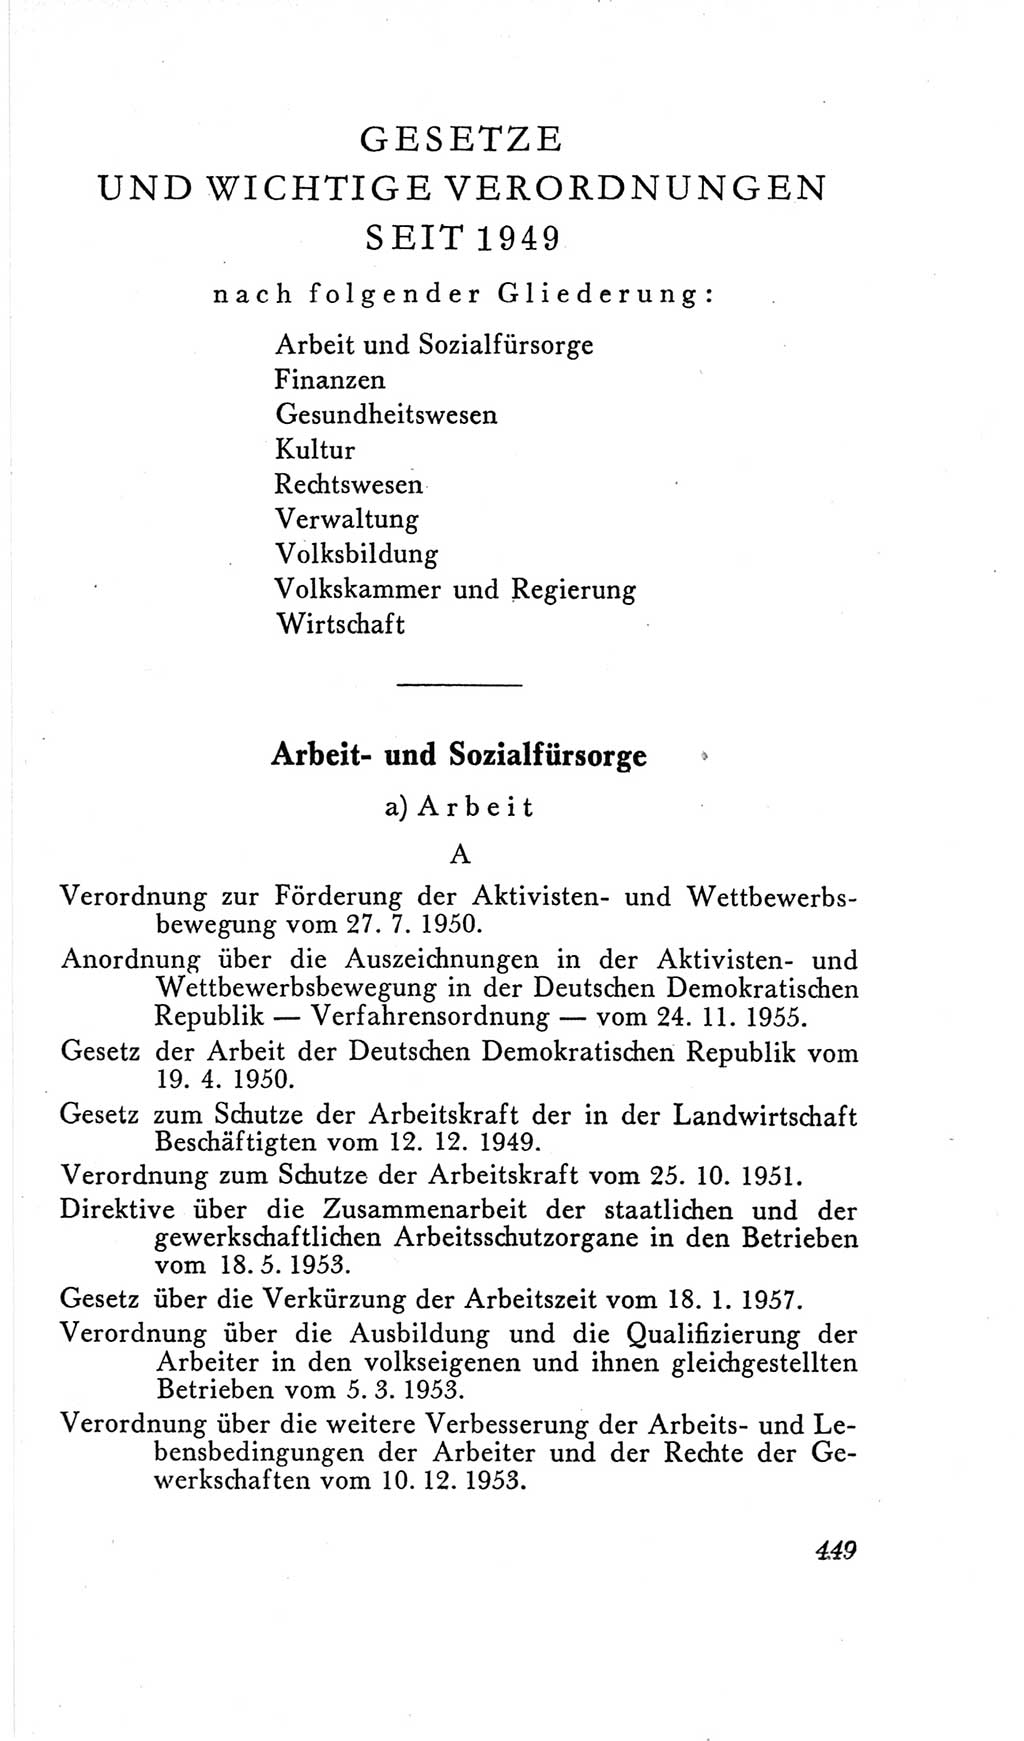 Handbuch der Volkskammer (VK) der Deutschen Demokratischen Republik (DDR), 2. Wahlperiode 1954-1958, Seite 449 (Hdb. VK. DDR, 2. WP. 1954-1958, S. 449)